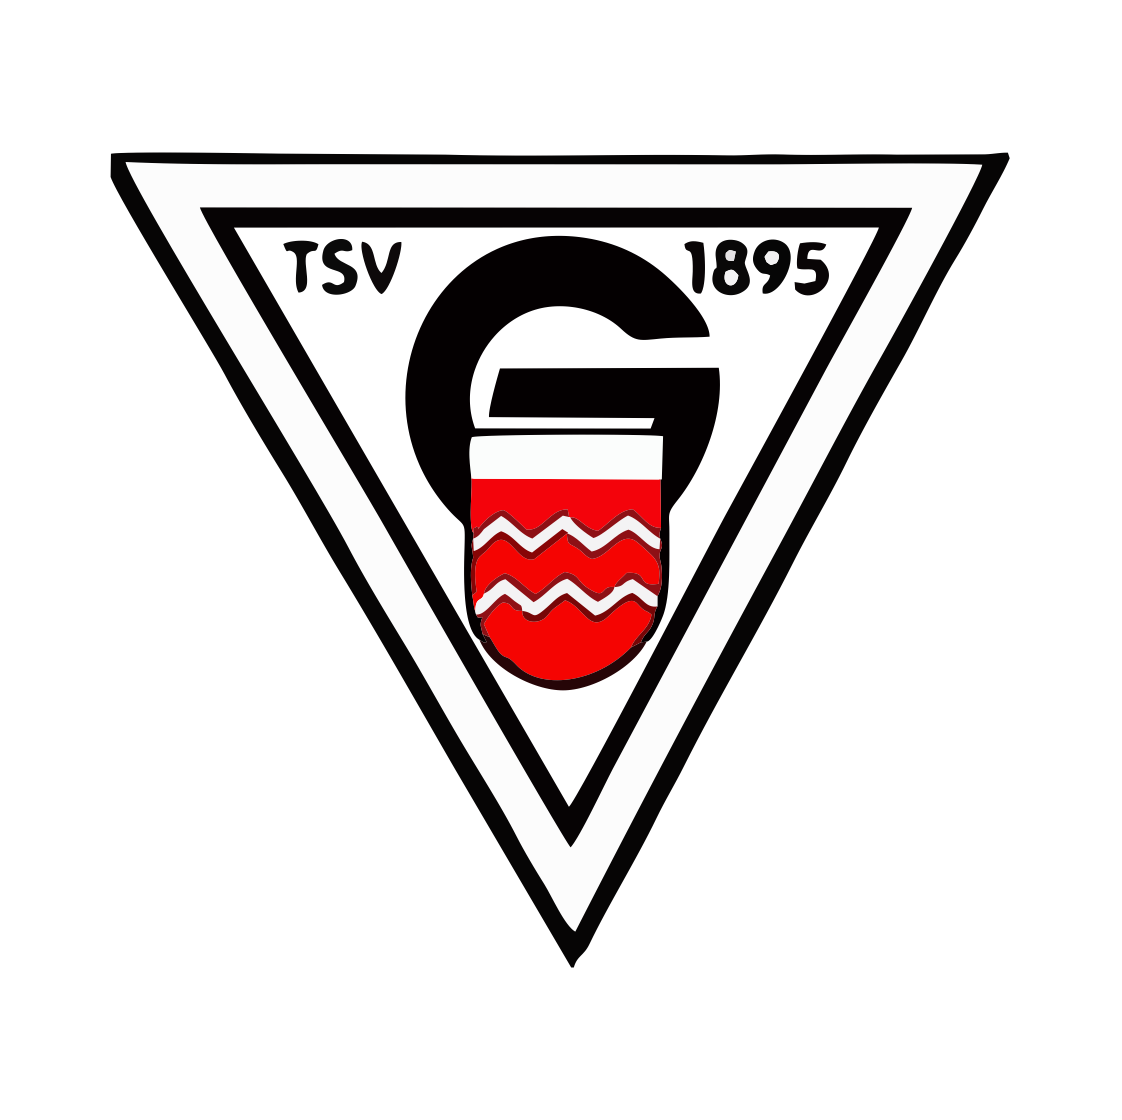 TSV Geislingen 1895 e.V.